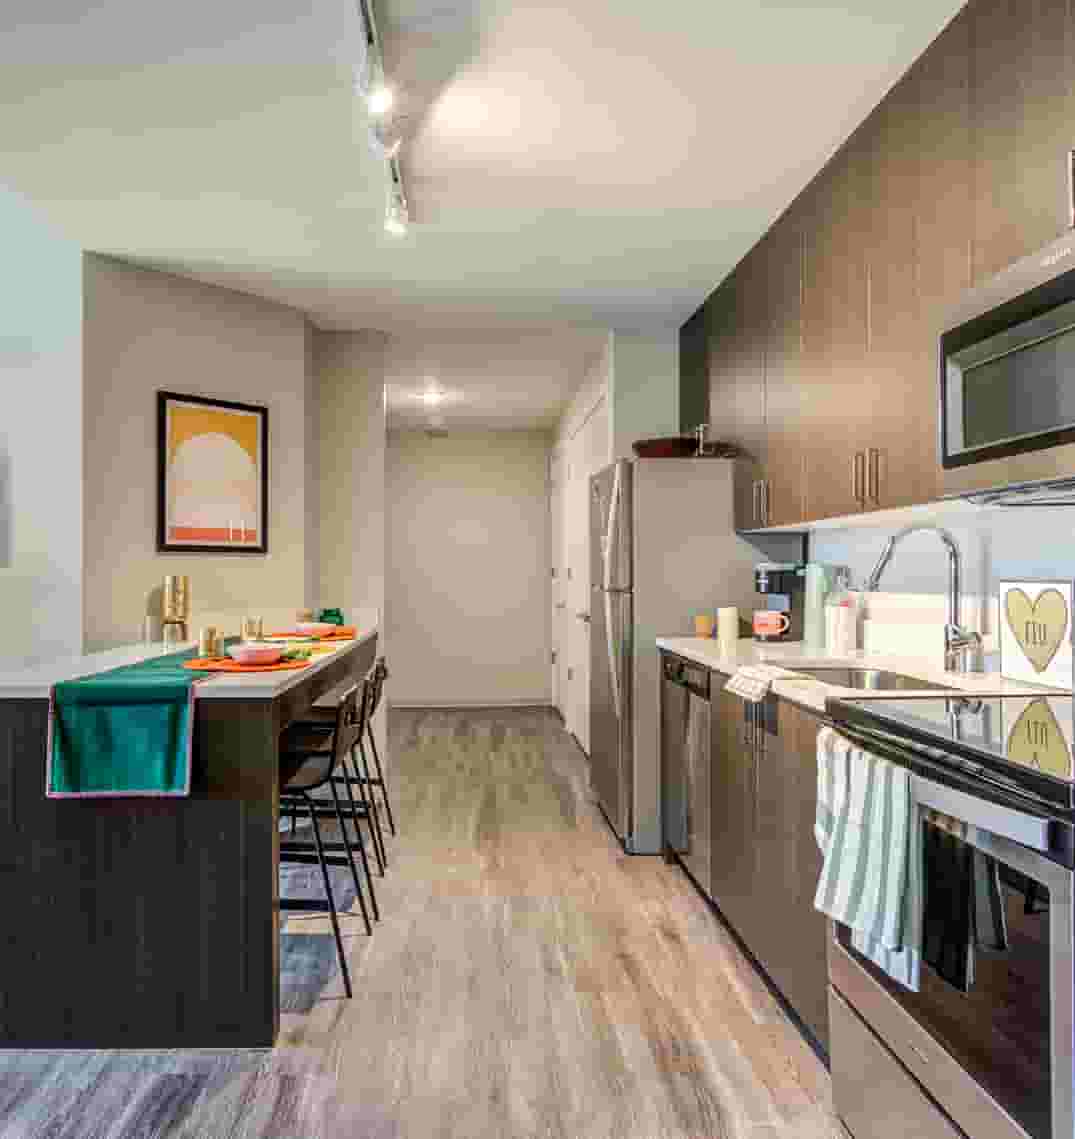 Premium student apartment kitchen with European style